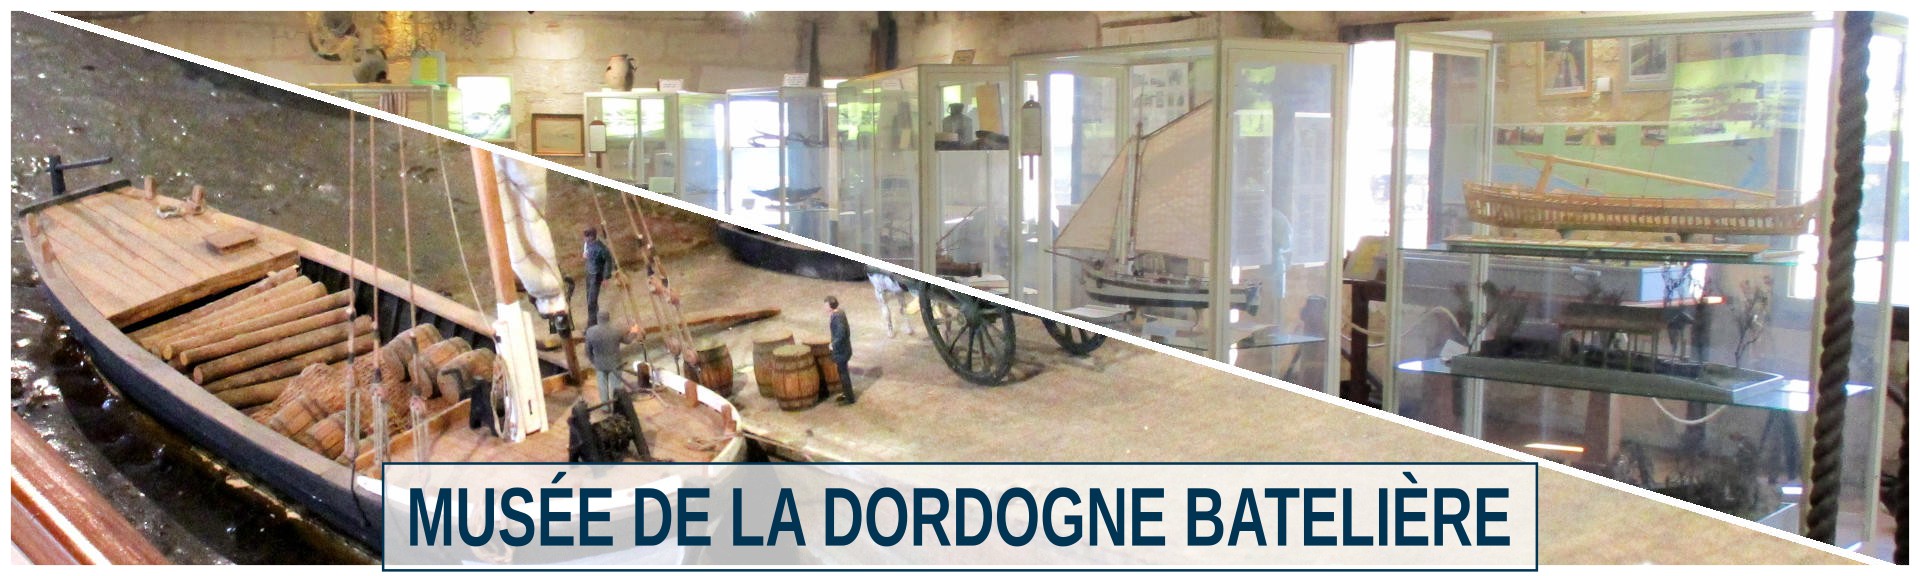 Musée de la Dordogne batelière